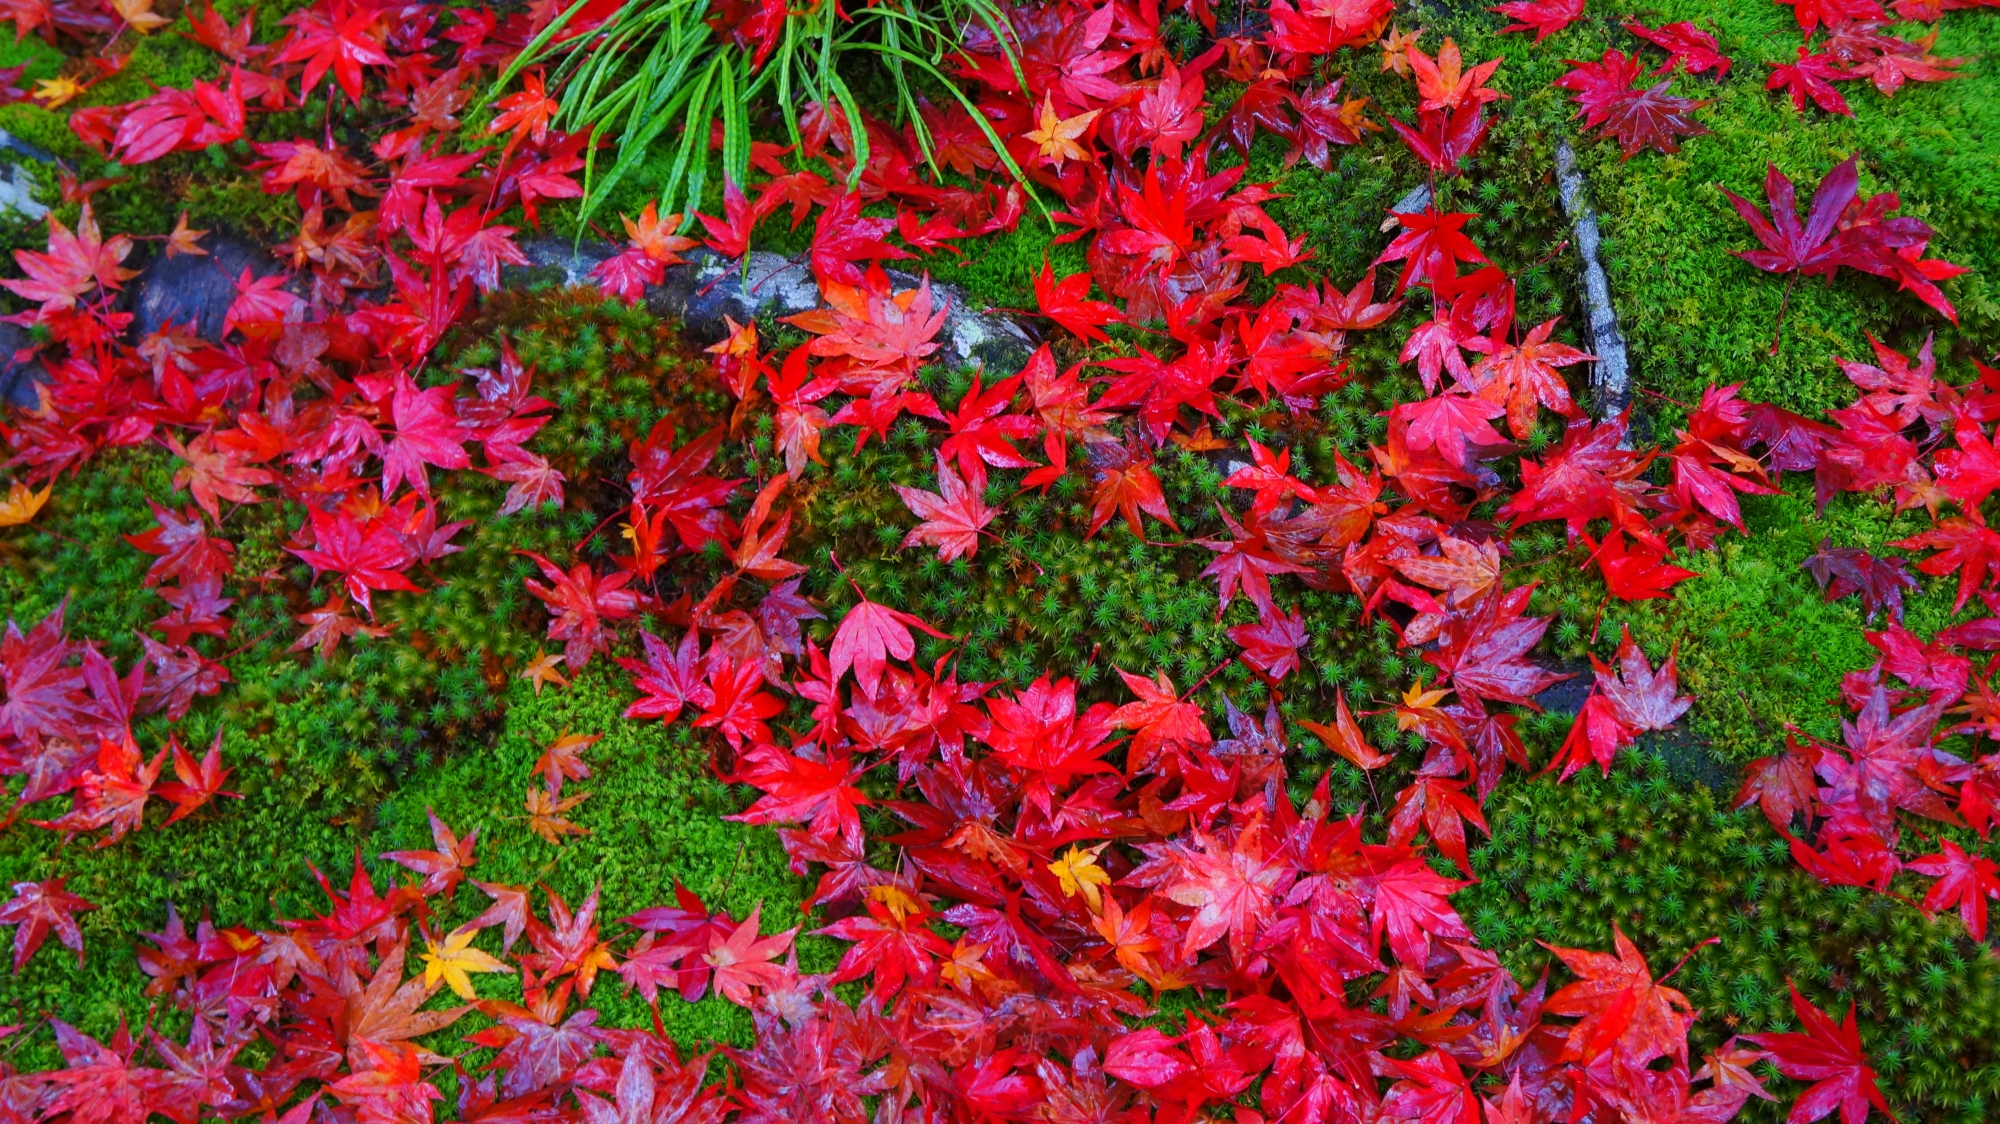 緑の苔に映える鮮烈な赤さの散紅葉